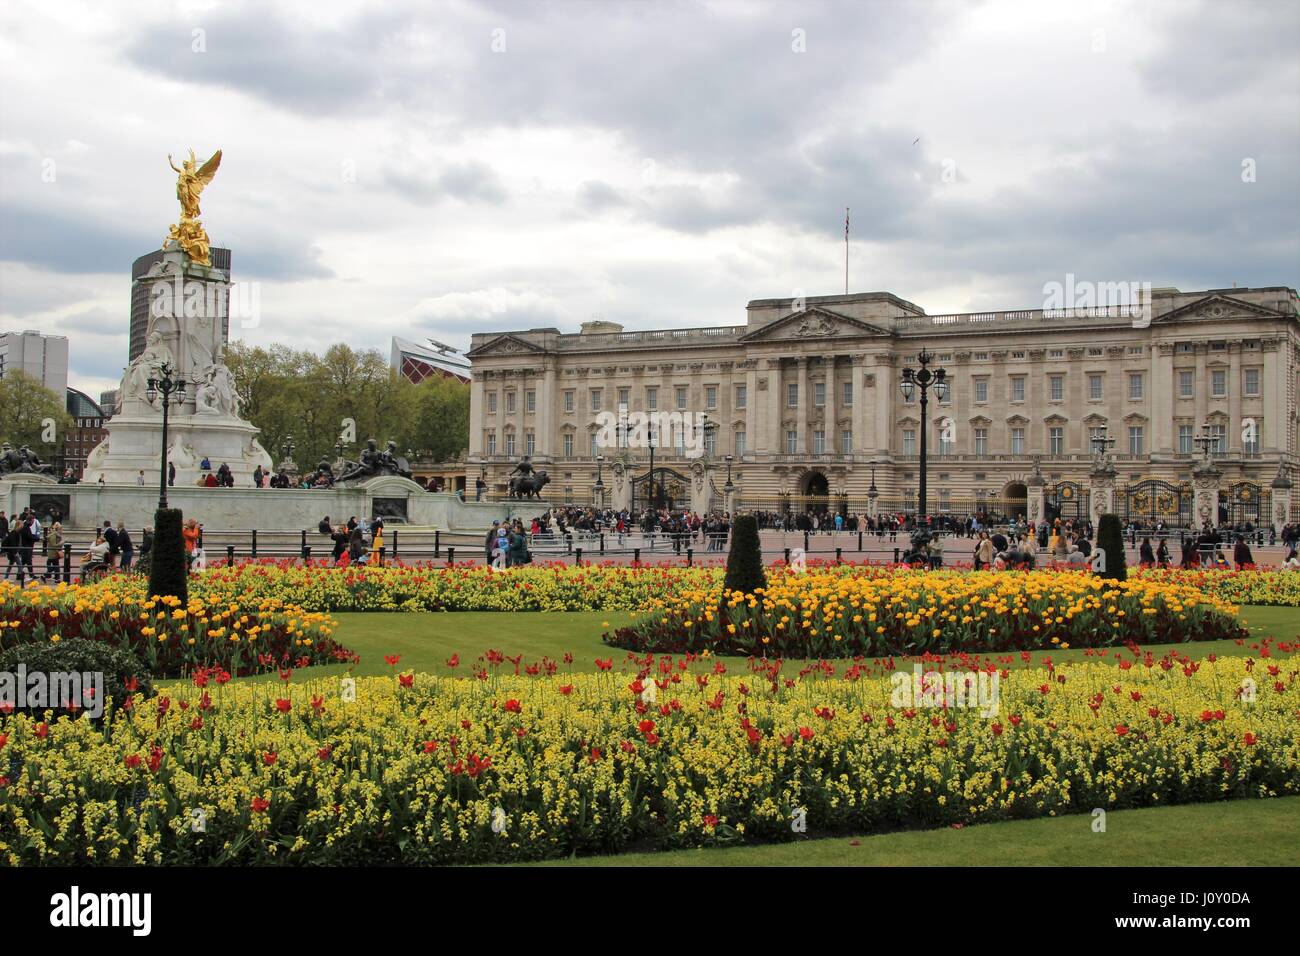 Buckingham Palace, residenza londinese della monarchia, con il memoriale della Victoria e letti di fiori Foto Stock